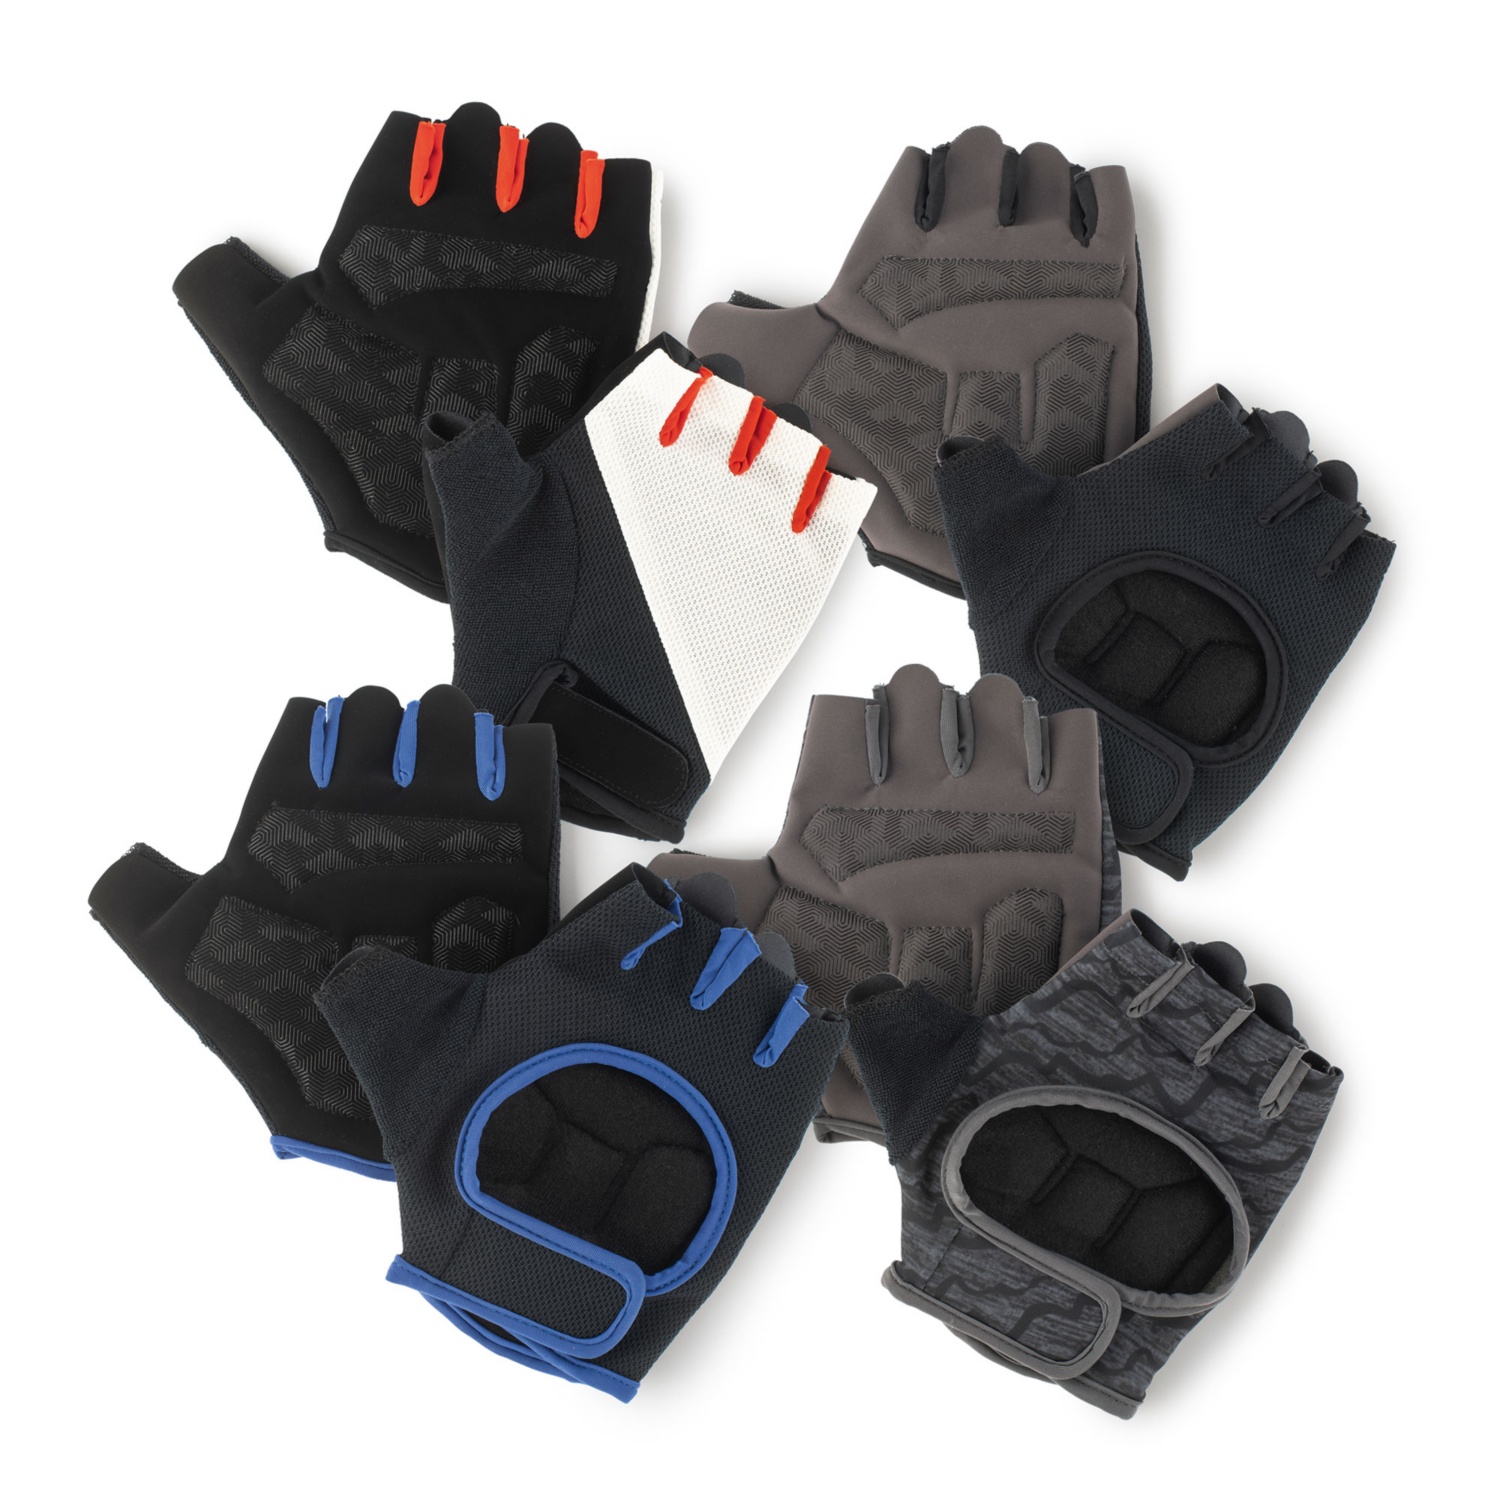 CRANE Damen-/Herren-Fitness Handschuhe